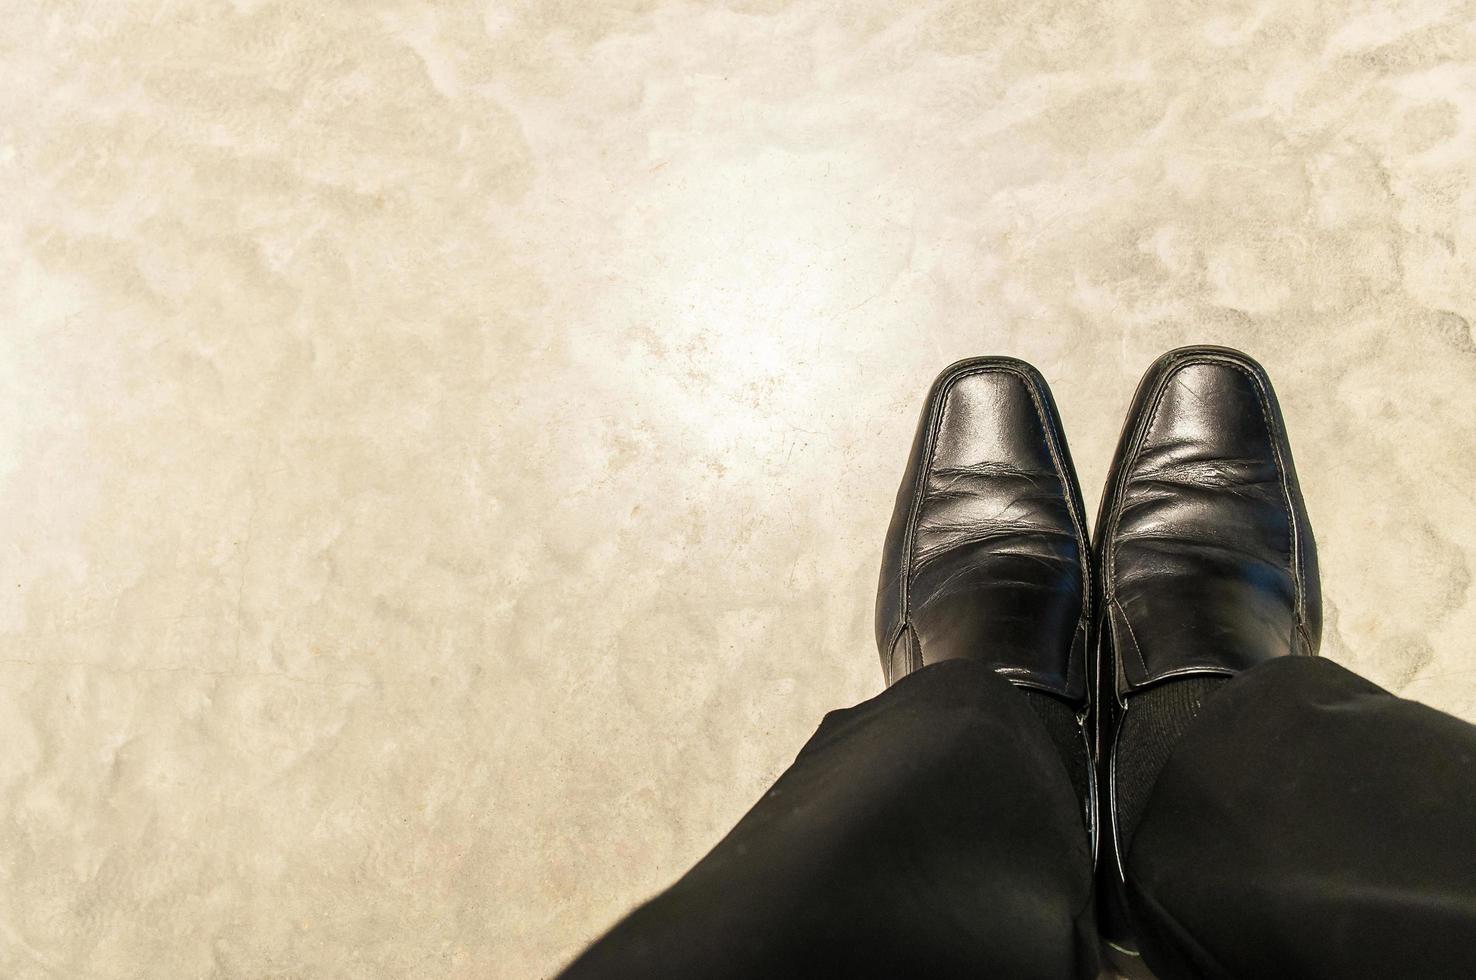 vue de dessus de vieux pantalons noirs et chaussures en cuir d'homme d'affaires assis relaxant sur le sol en ciment. la photo est centrée sur les chaussures.